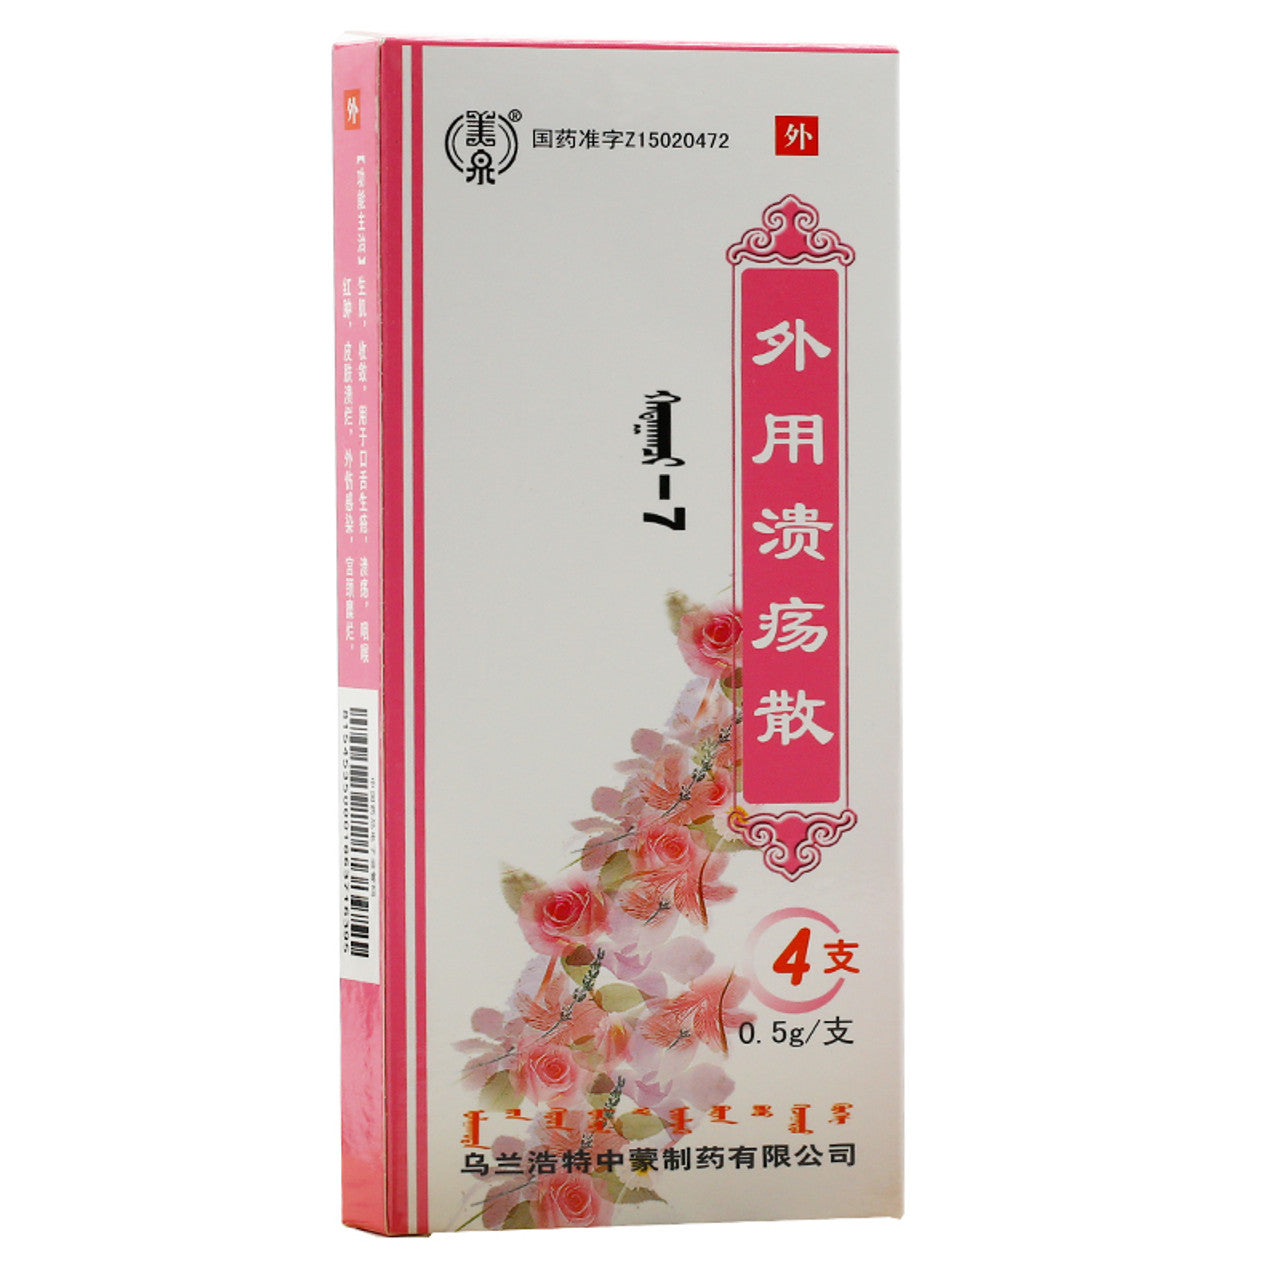 Traditional Chinese Medicine. Waiyong Kuiyang San or Waiyong Kuiyang Powder For Mouth Ulcers. Wai Yong Kui Yang San. 0.5g*4 PCS*5 boxes